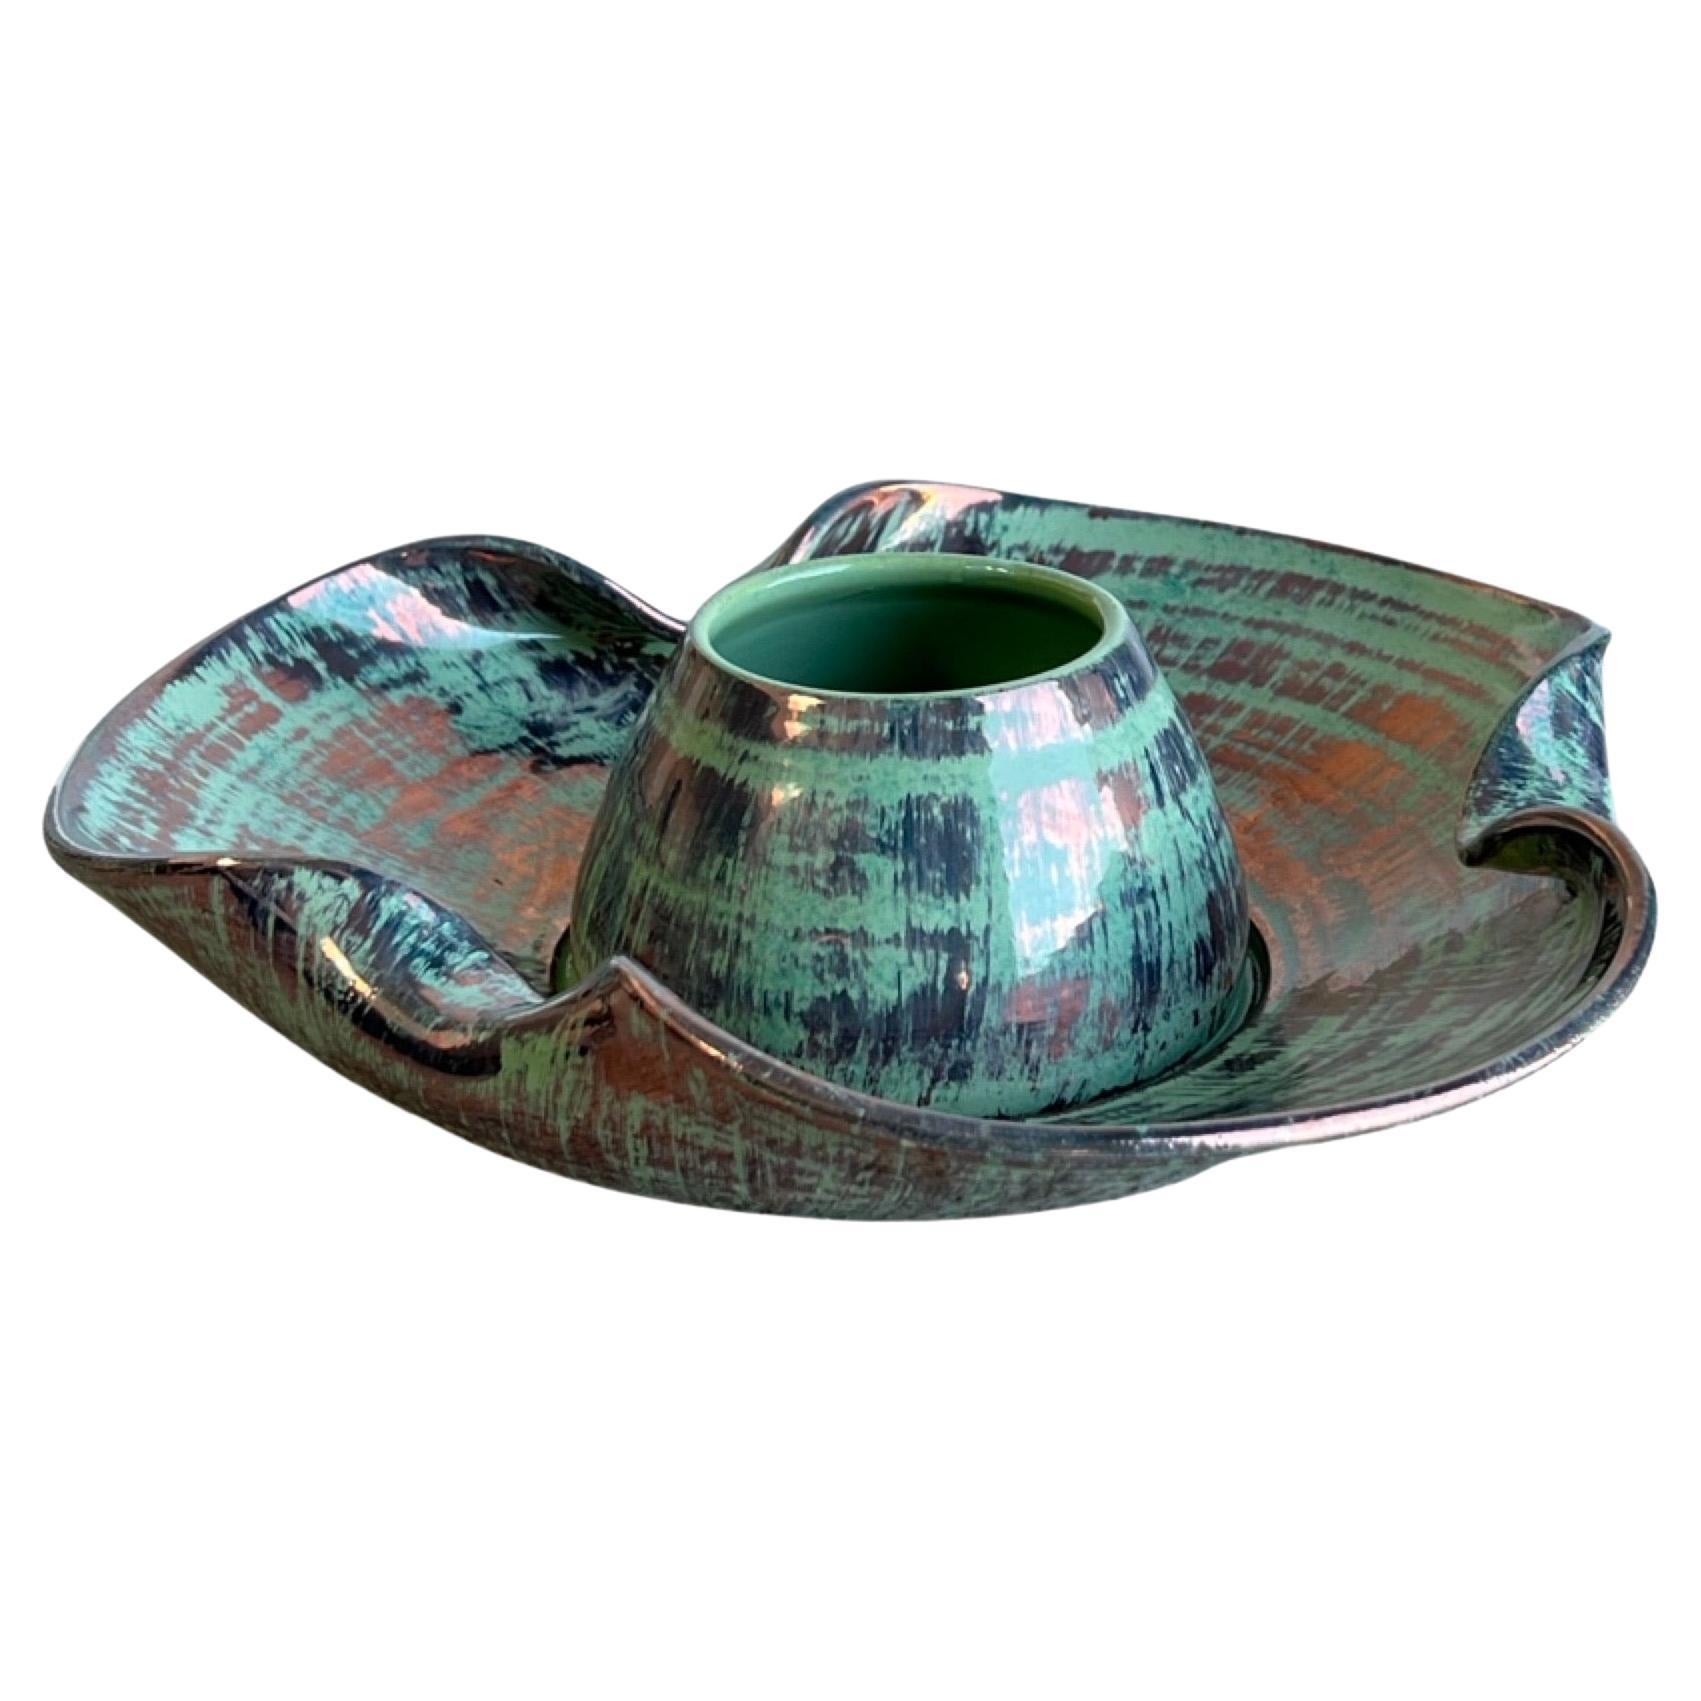 Italian Ceramic Decorative Bowl